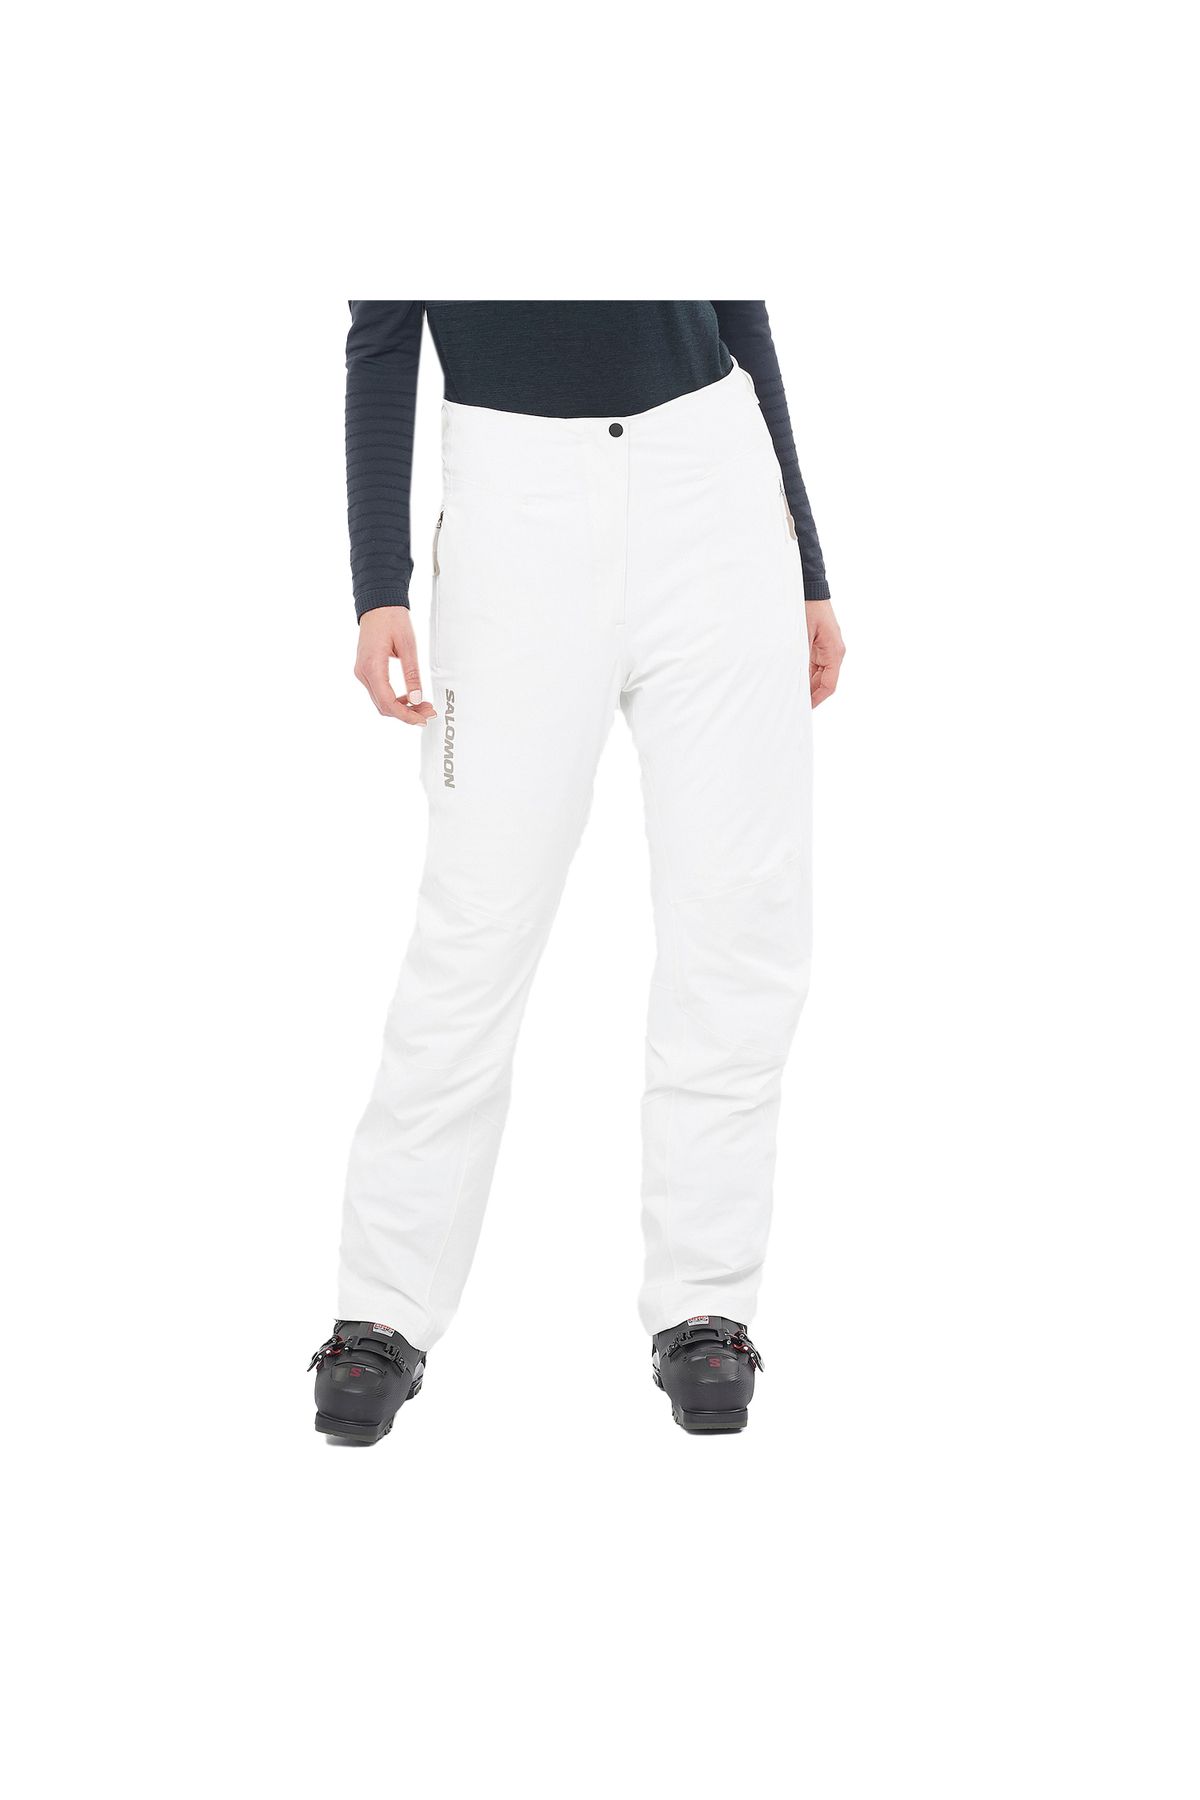 Salomon S/max Warm Kadın Kayak Pantolonu